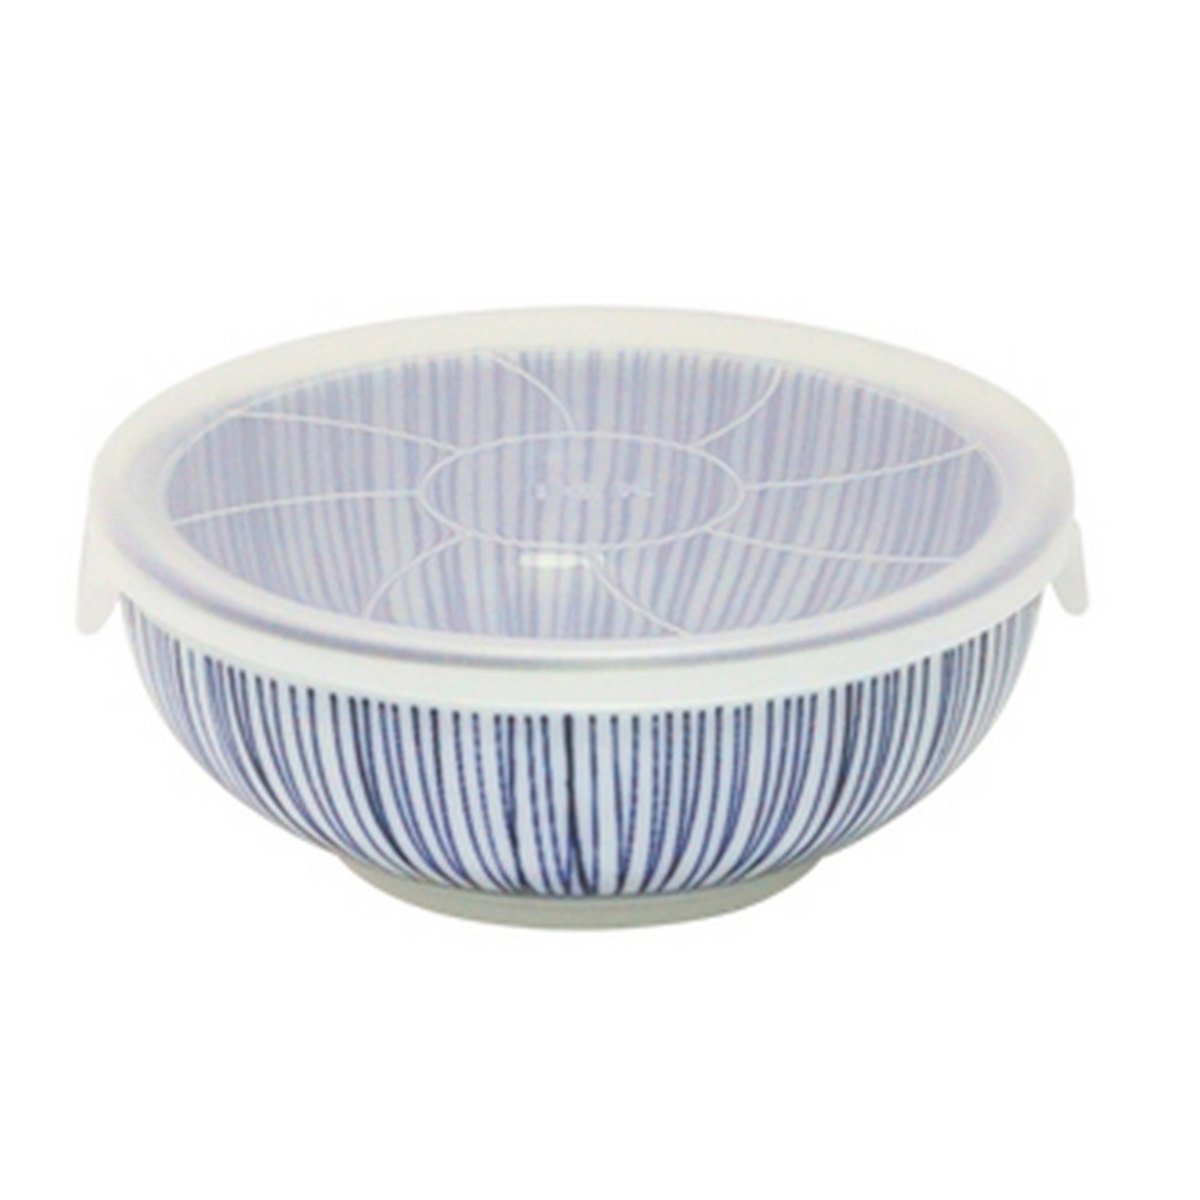 Concept Japan Hosotogusa Large Bowl with Lid 17cm